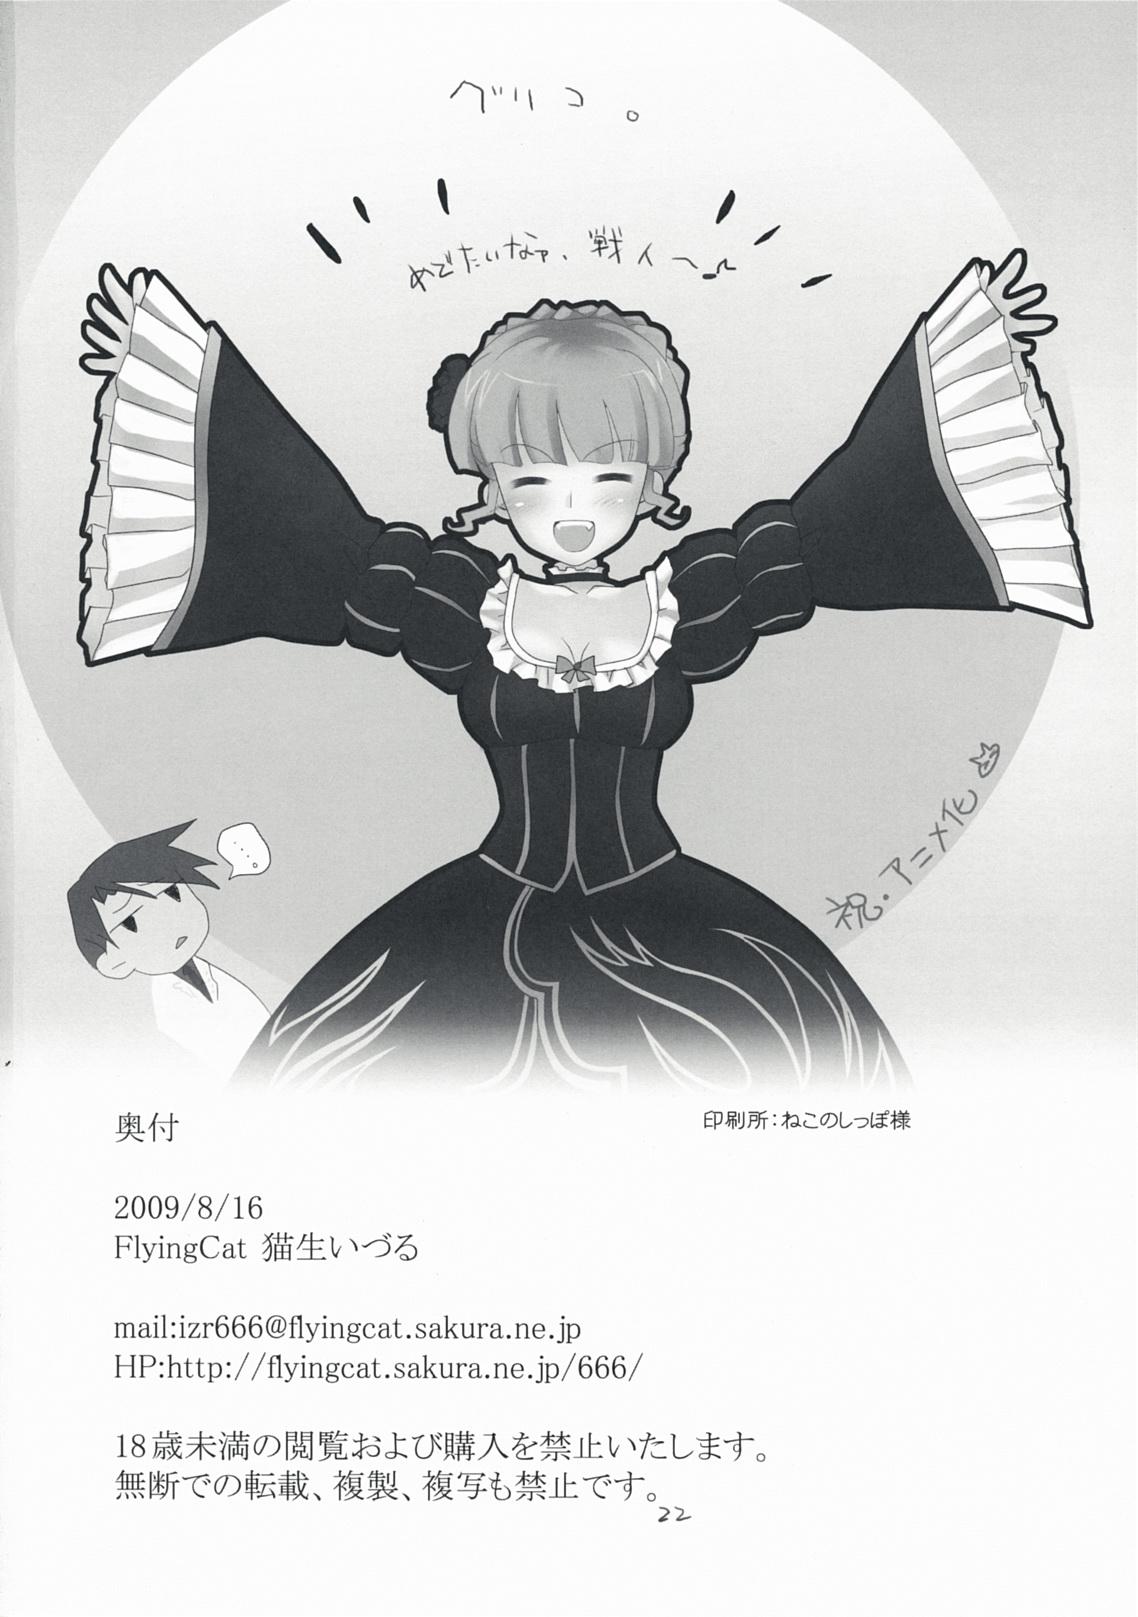 Cream Pie The Queen Of Nightmare - Umineko no naku koro ni Pendeja - Page 22